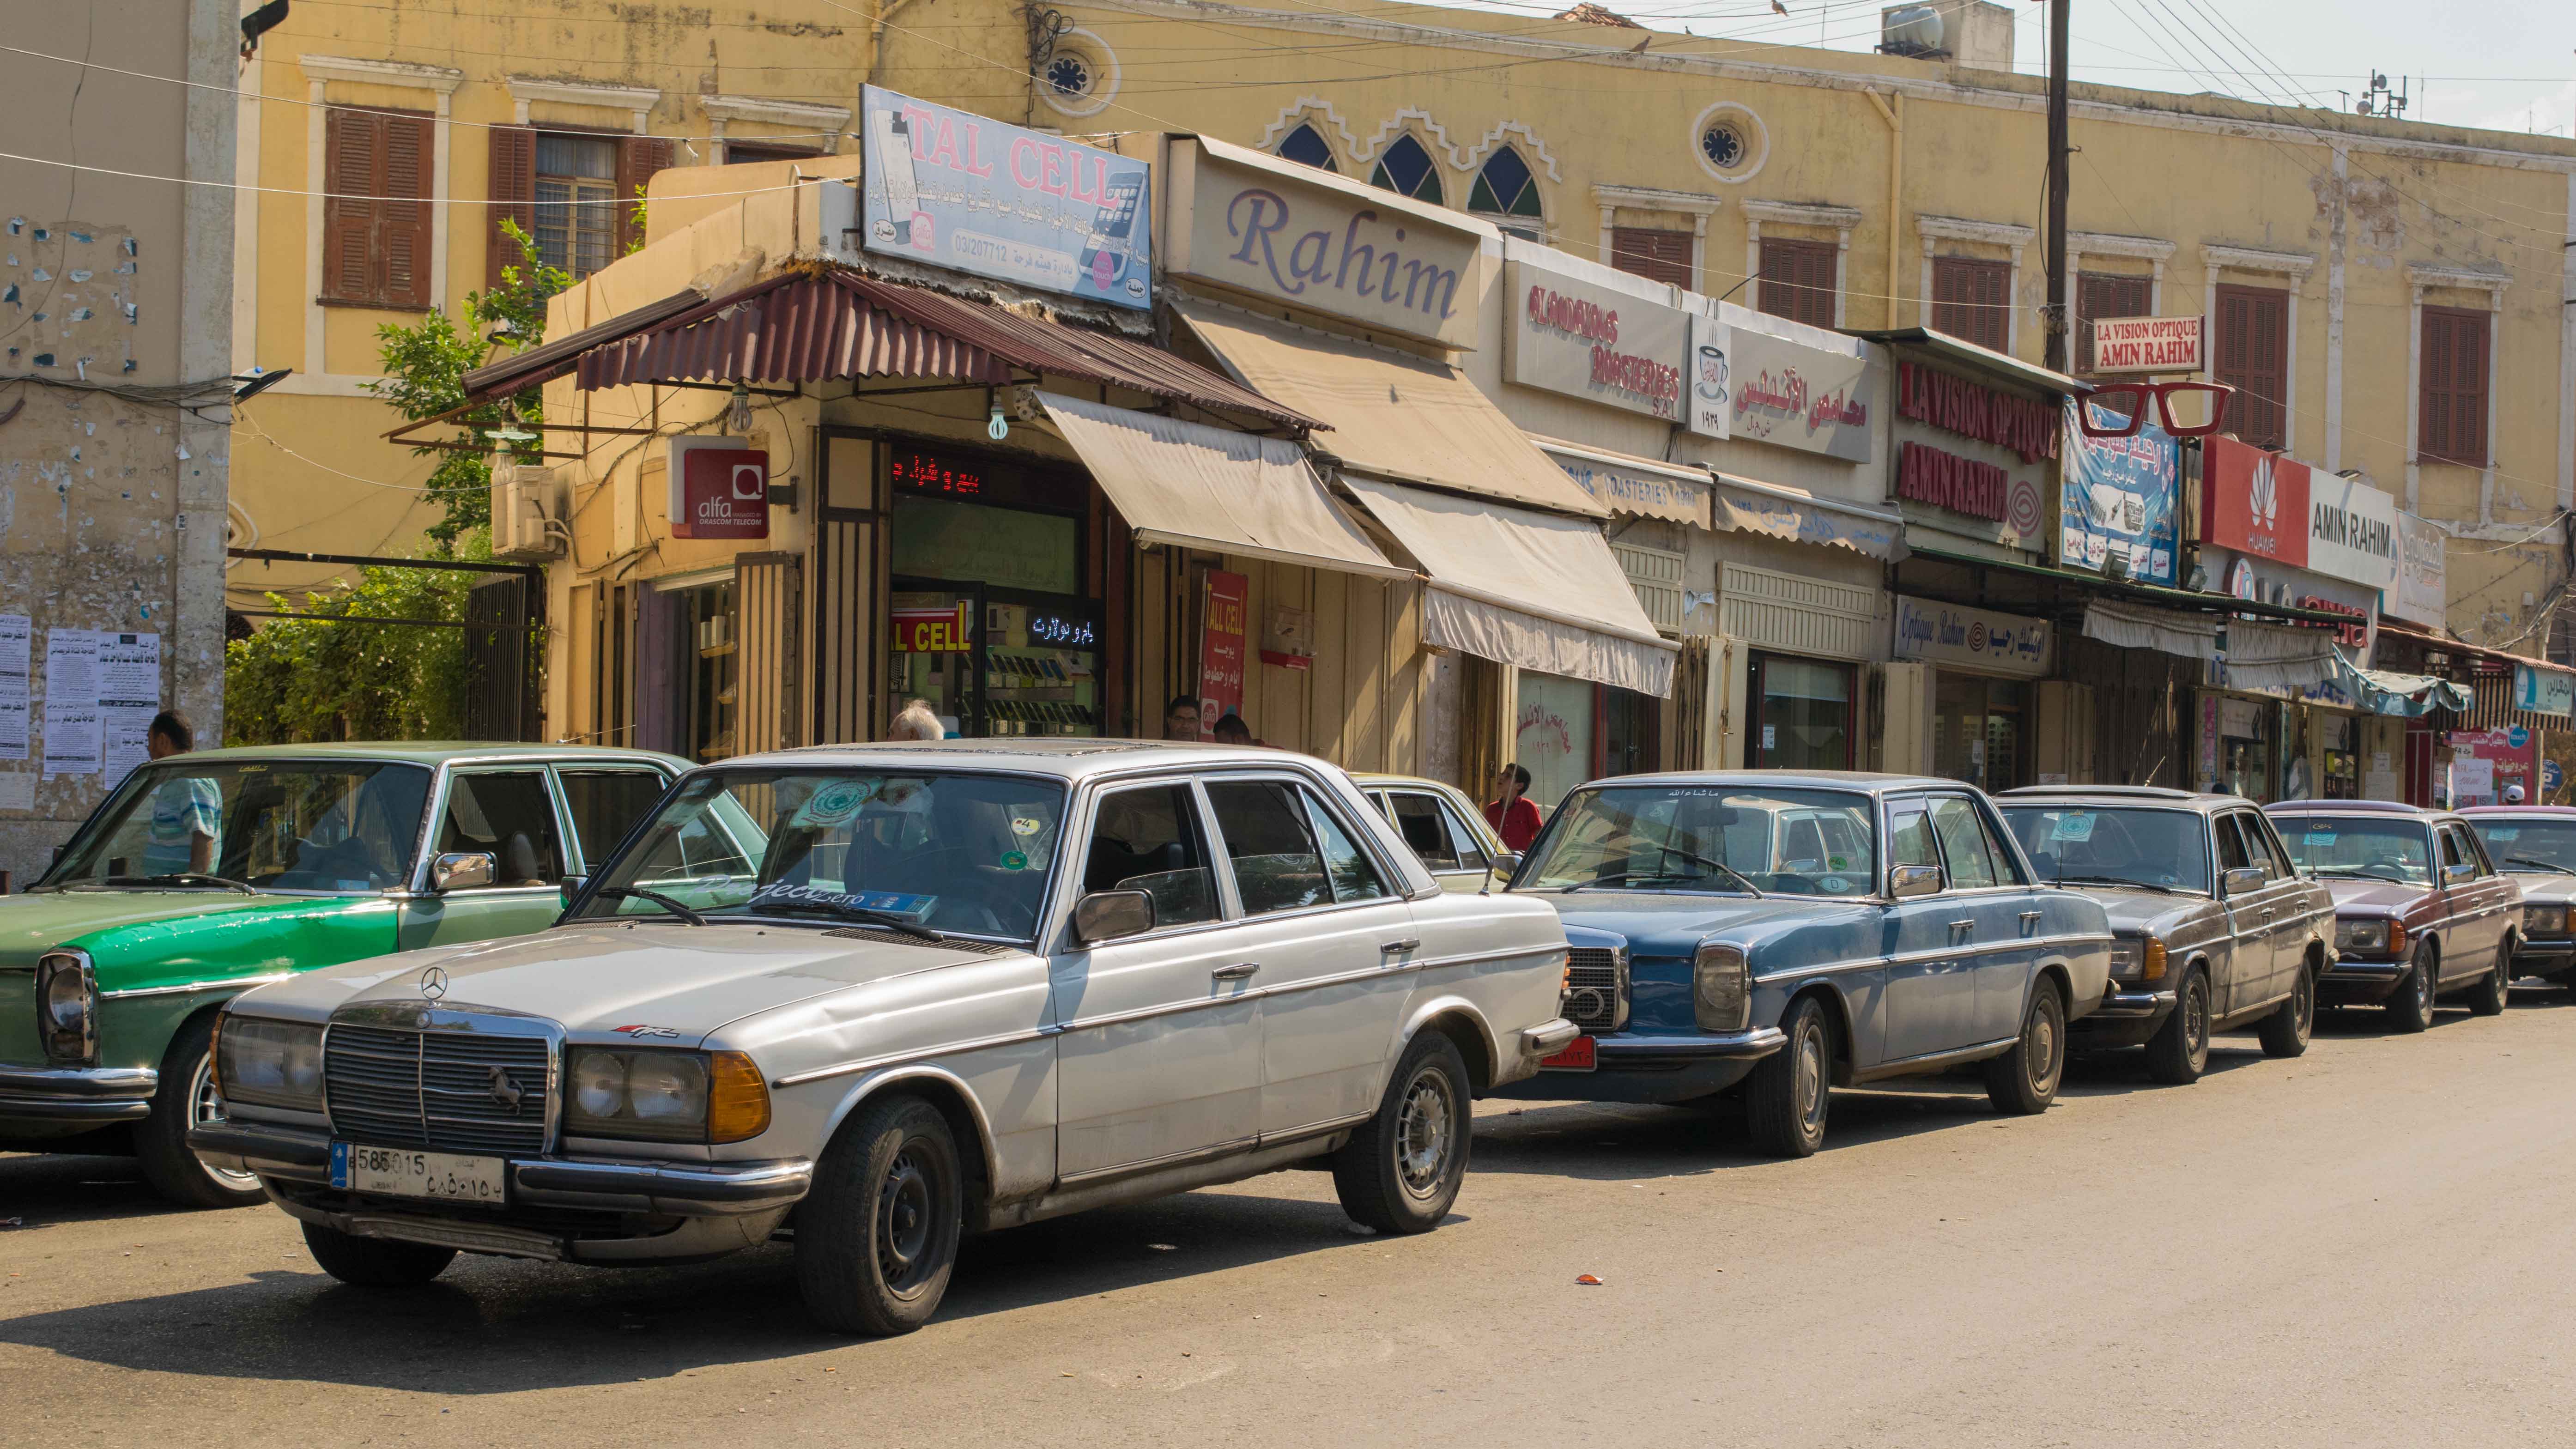 Carros antigos nas ruas de Tripoli. Viagem para o Líbano.